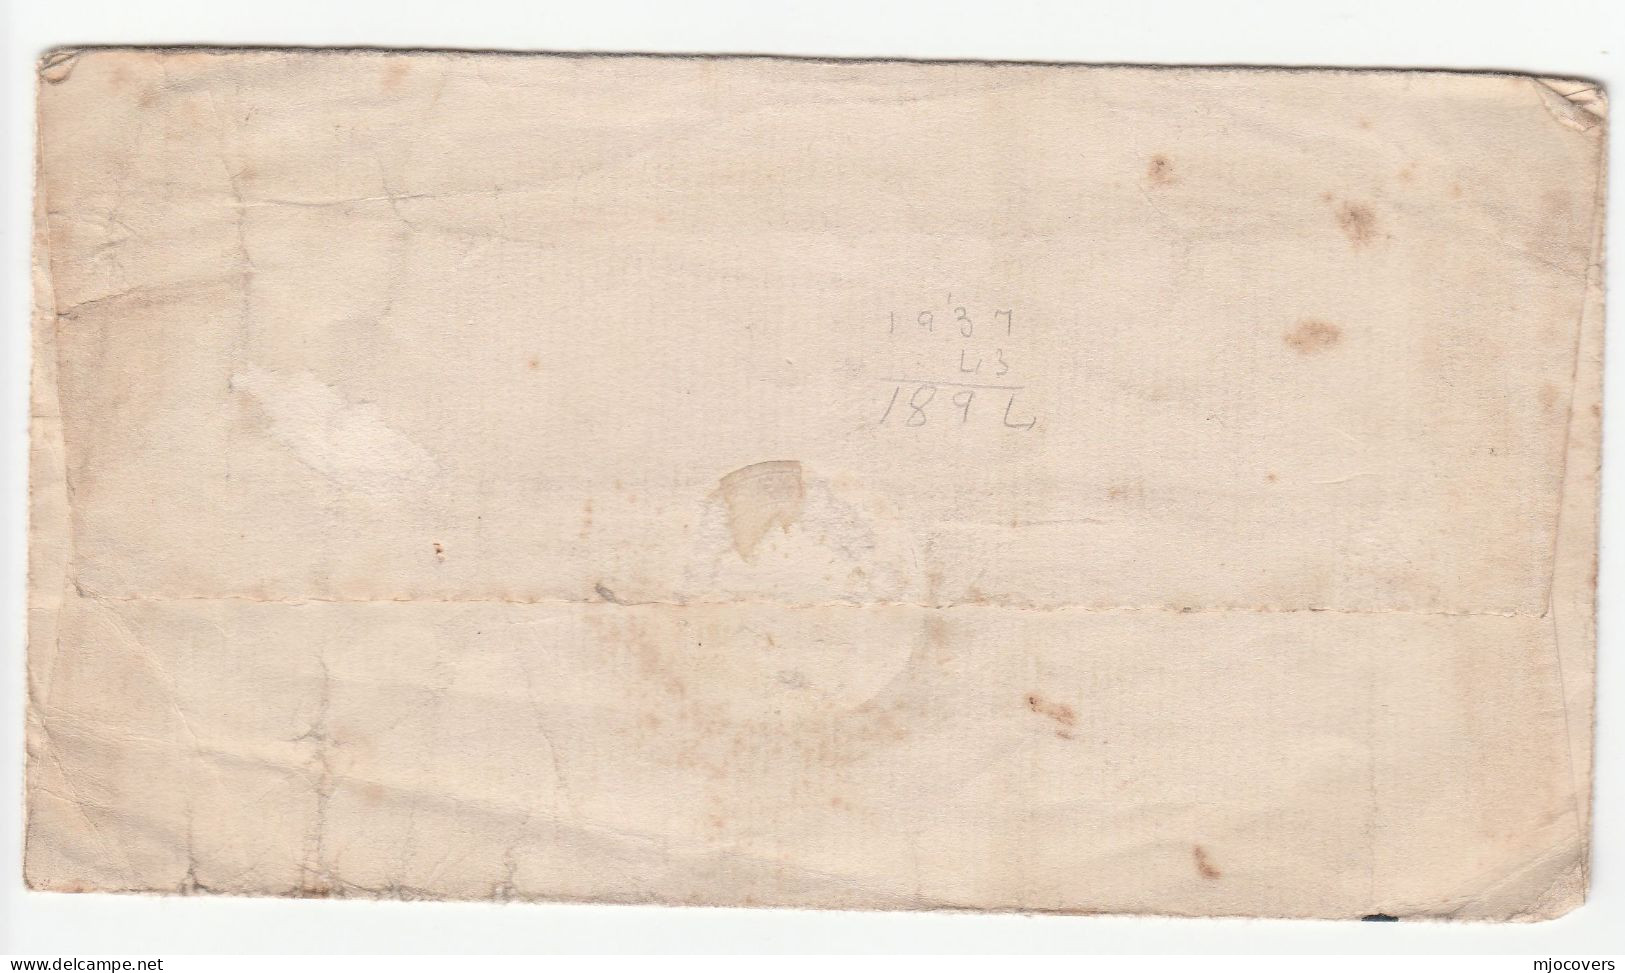 1937 - 1939 Ships RMS  AQUITANIA, SS BREMEN, SS PRESIDENT HARDING Covers CANADA To GB Stamps Ship Cover - Cartas & Documentos